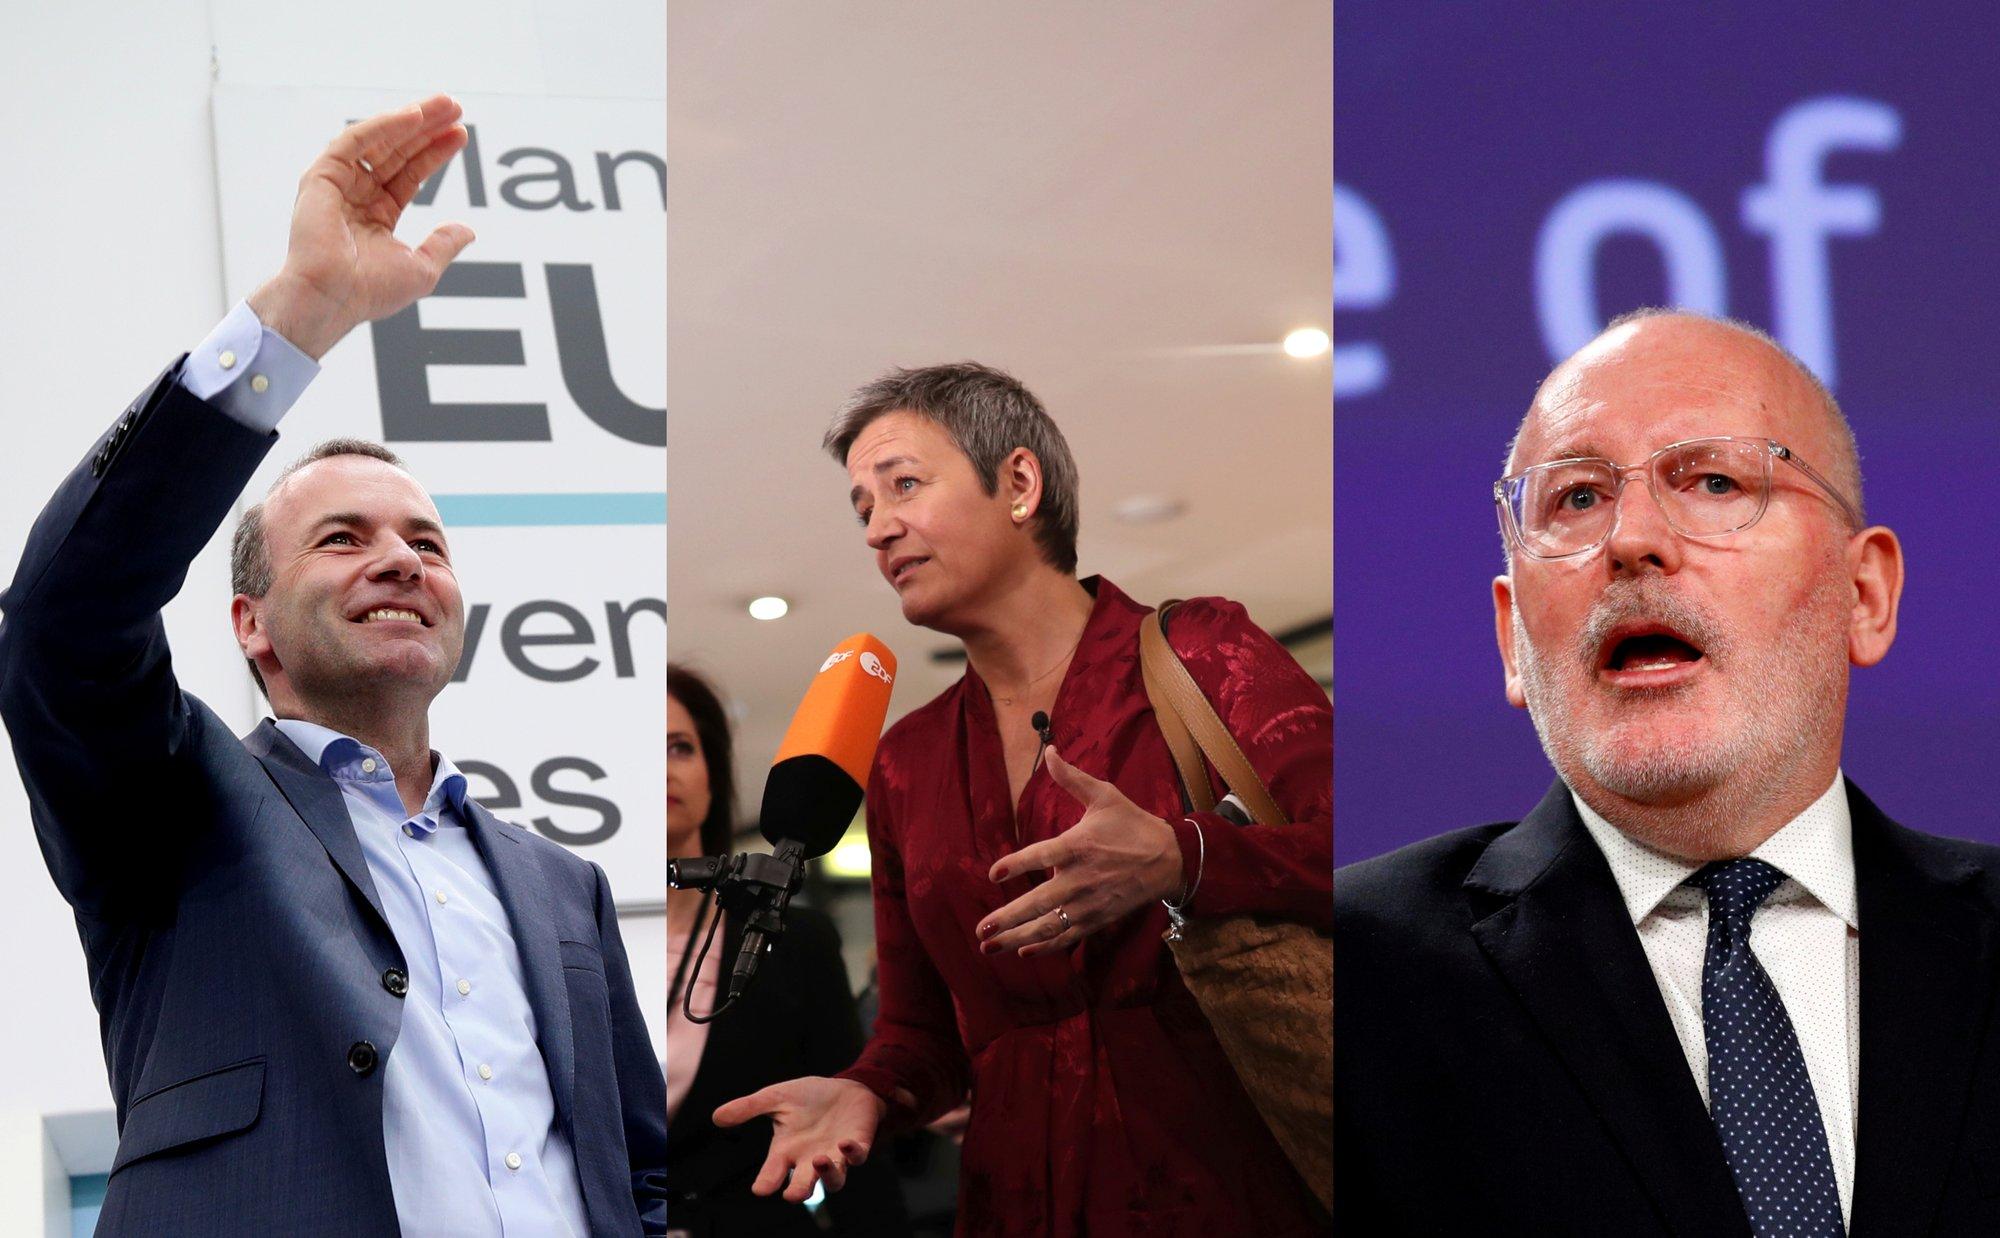 Дебаты о посте главы ЕК: кого выберет Европа?